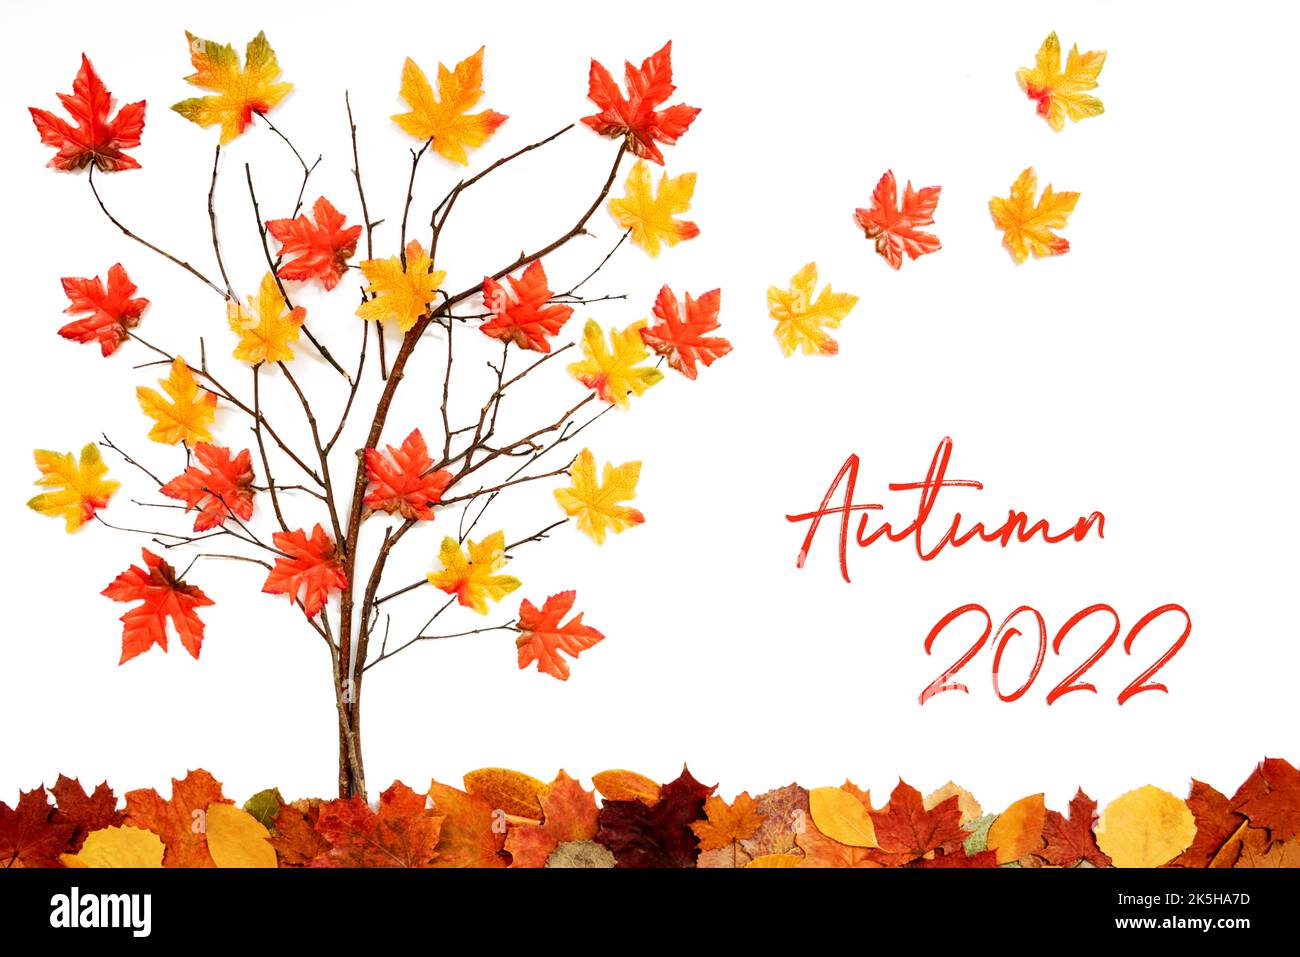 Albero con decorazione colorata delle foglie, foglie che si allontanano, testo Autunno 2022 Foto Stock